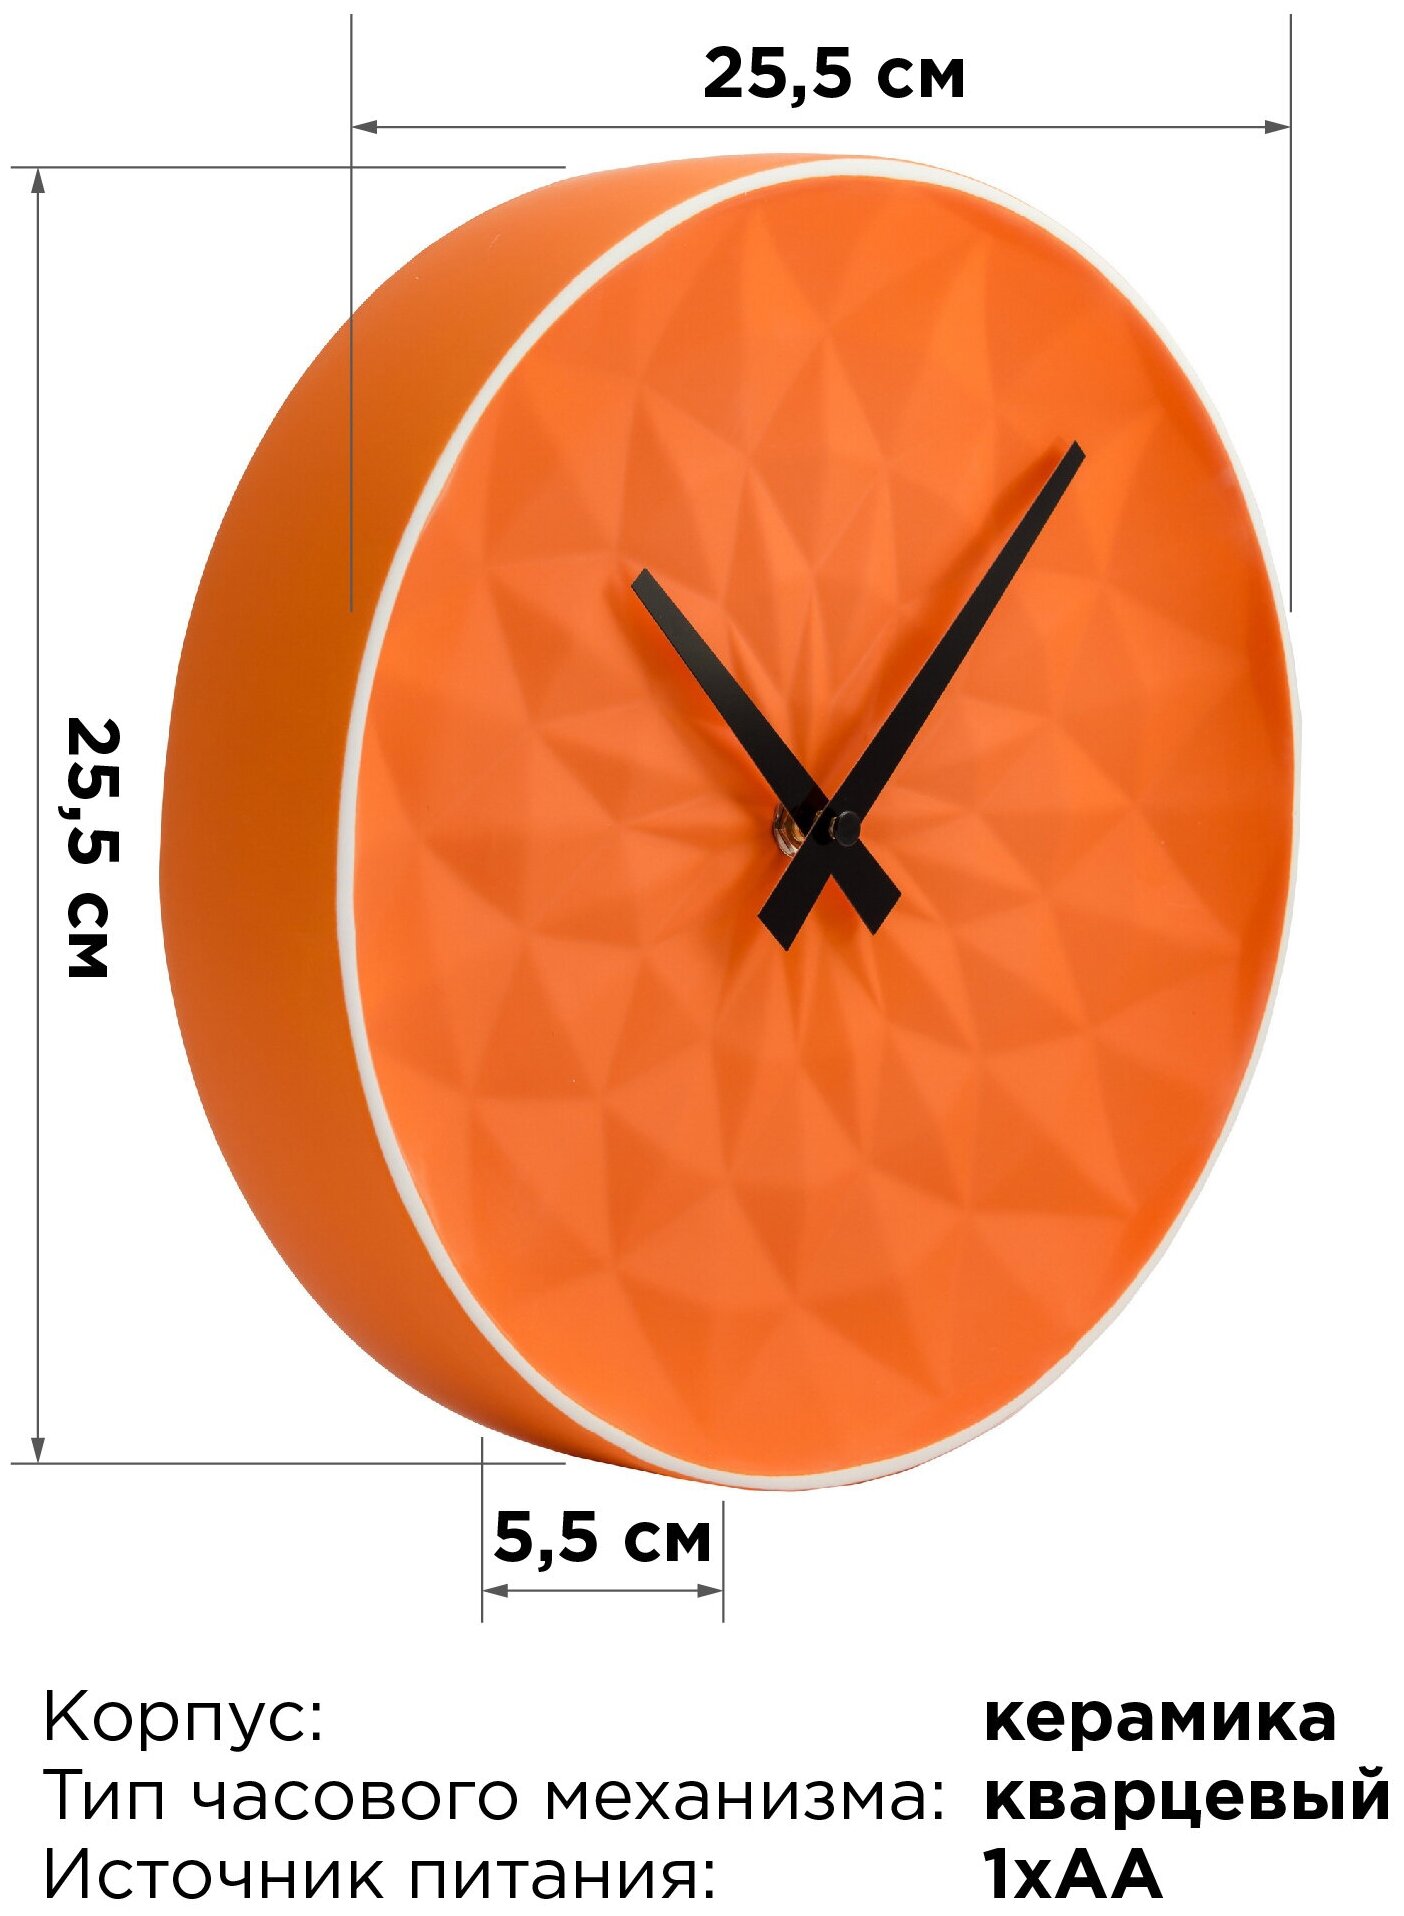 Часы настенные круглые Vilart 18-301-1 средние, яркий дизайн для кухни .